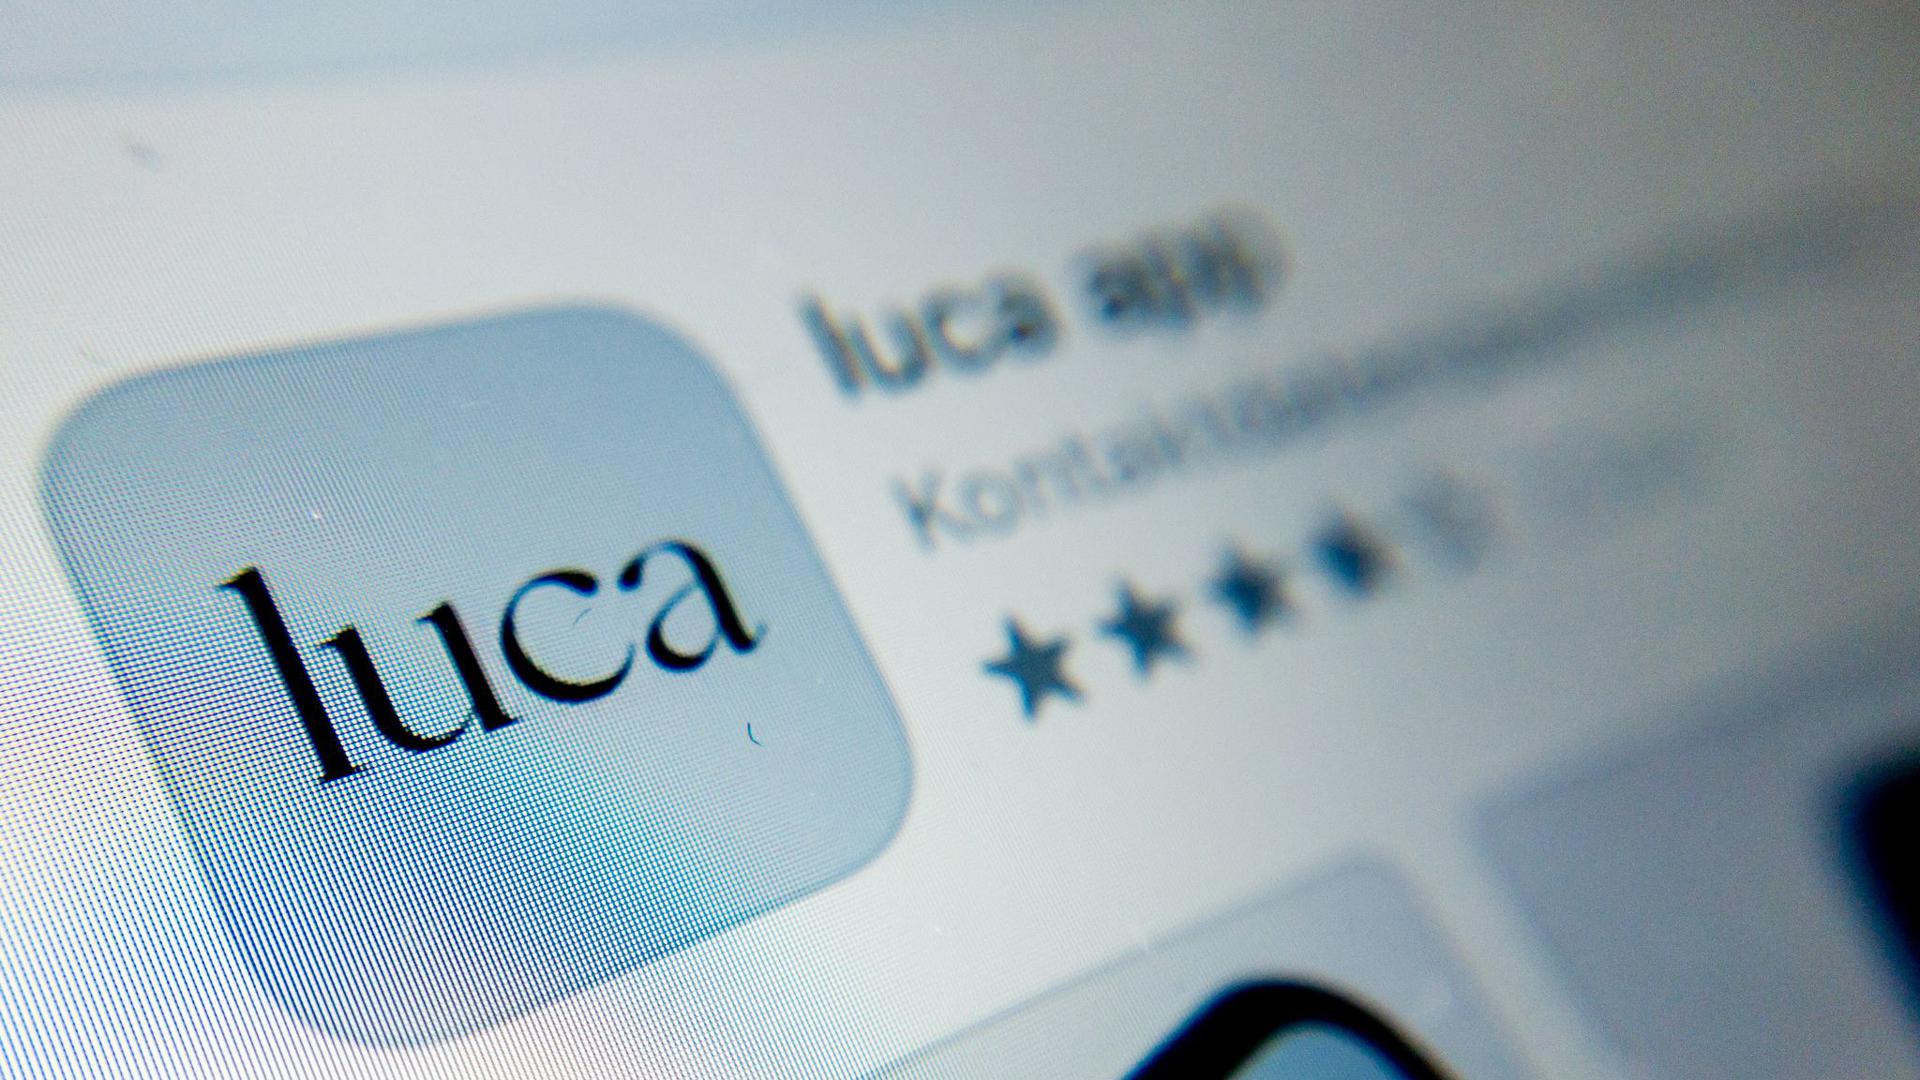 ILLUSTRATION – Das Symbol der Luca-App ist auf einem Smartphone zu sehen.